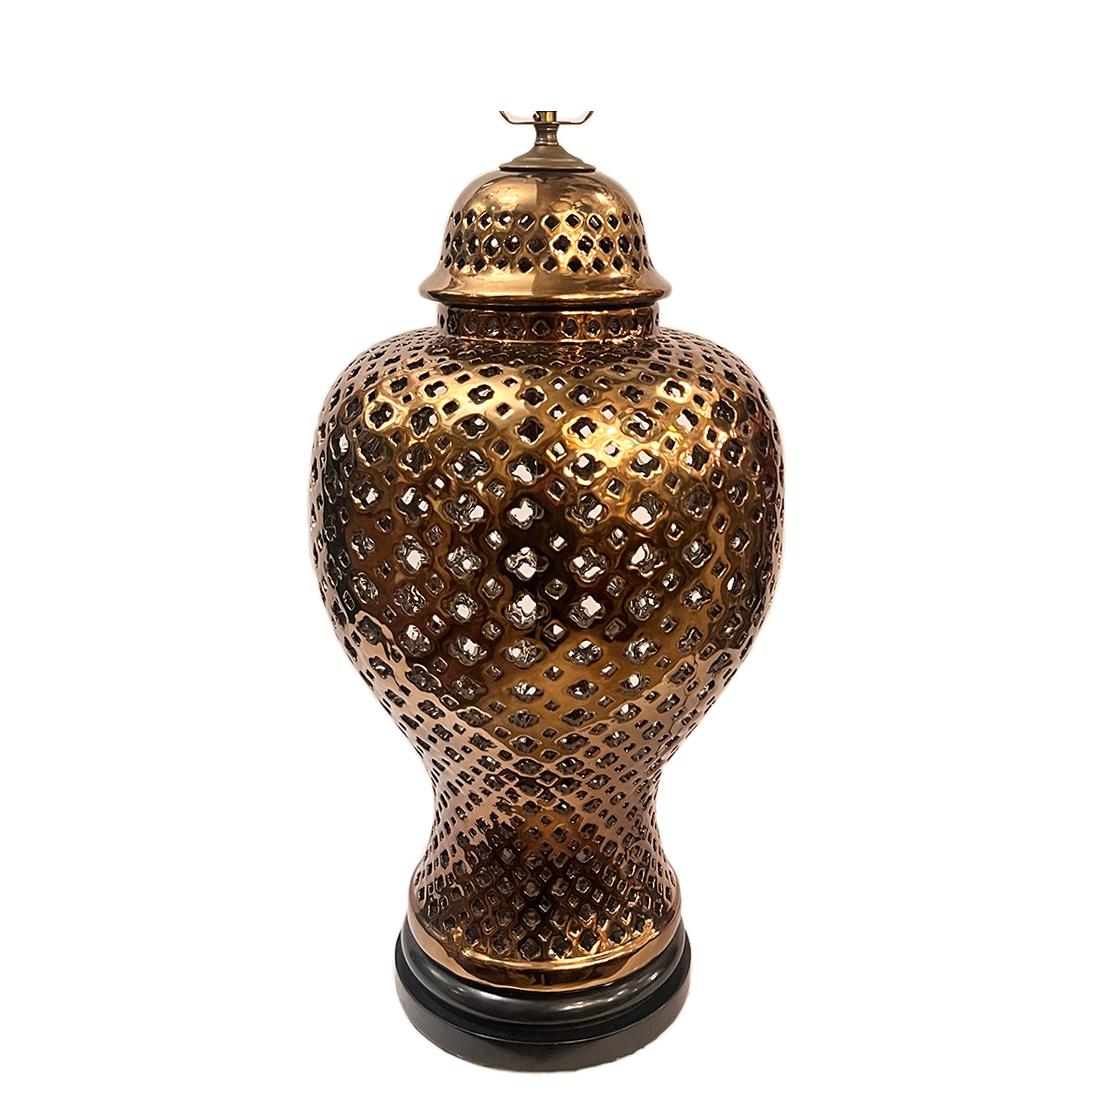 Grande lampe italienne en porcelaine percée, datant des années 1970, en forme de pot de gingembre.

Mesures :
Hauteur du corps : 22.25